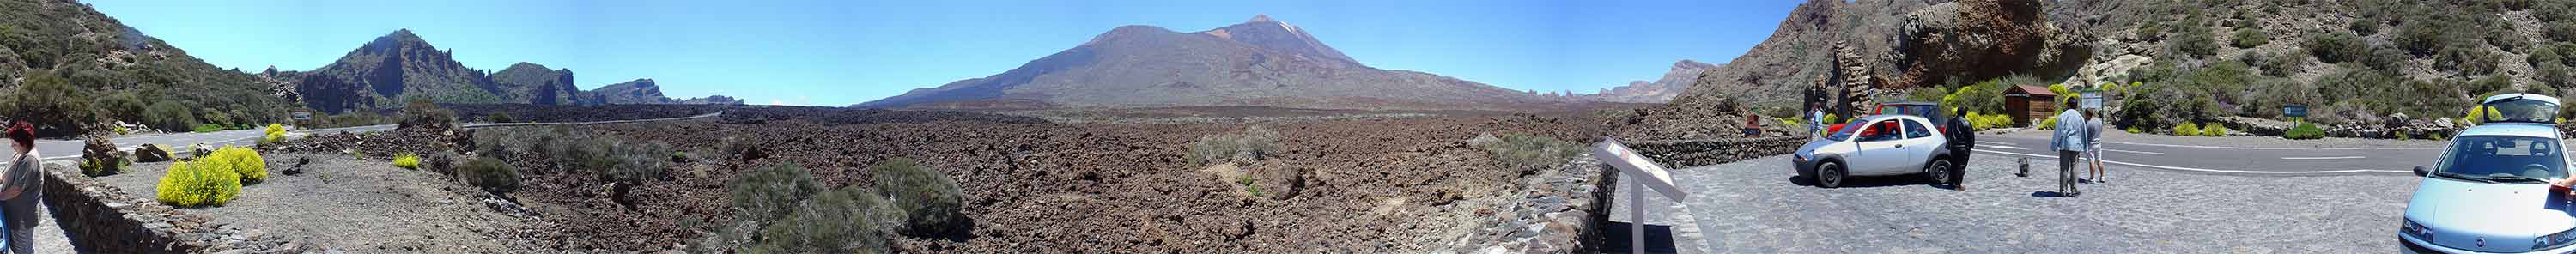 Lavafelder und Teide - Teneriffa 360 Grad Panorama